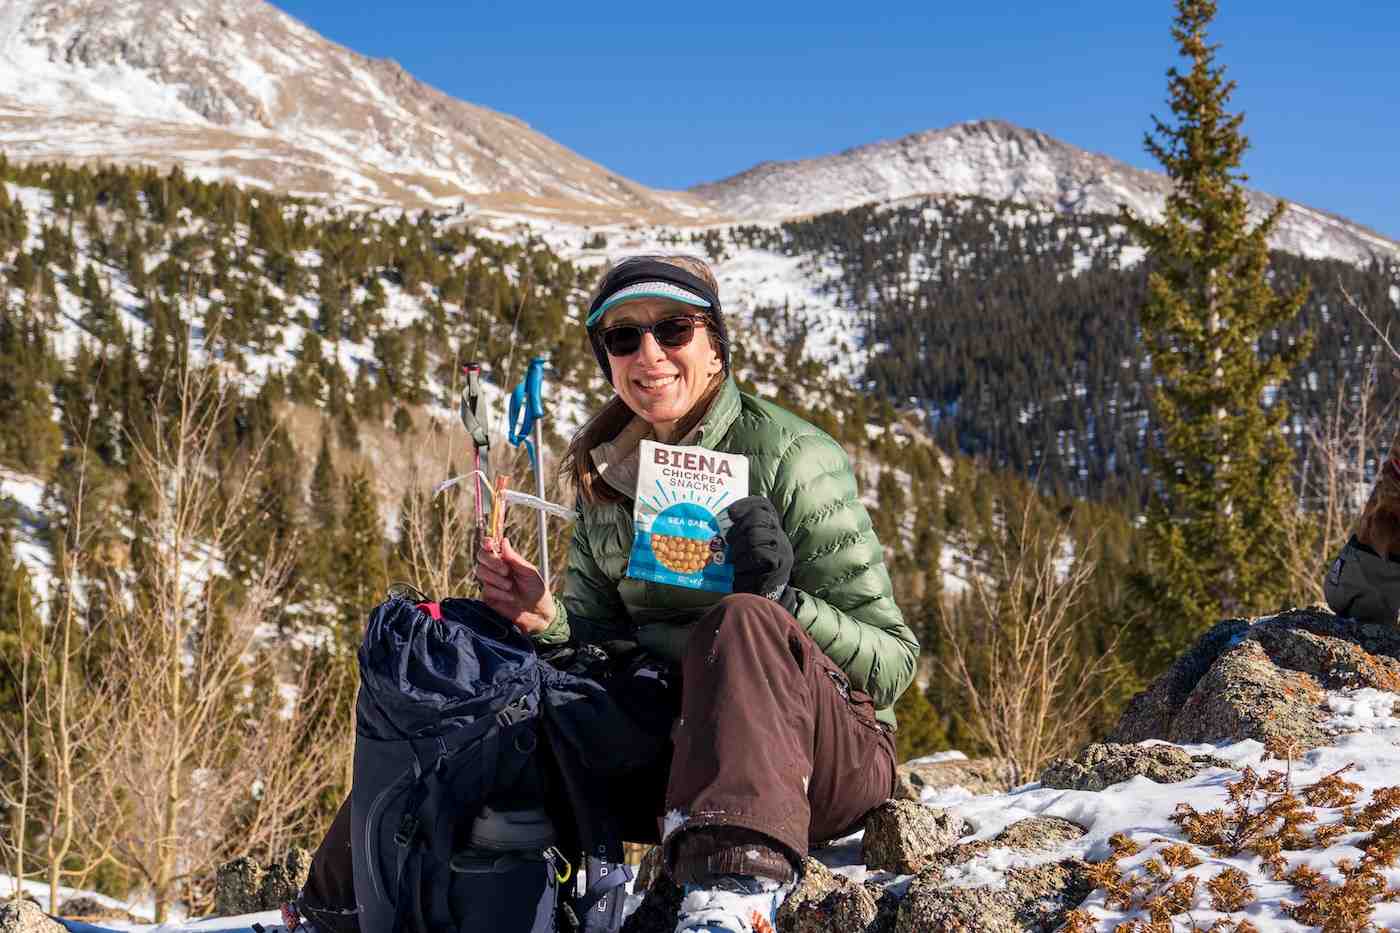 Alimentazione per le vostre avventure escursionistiche: Nutrienti essenziali e 30 idee per un pranzo facile da preparare